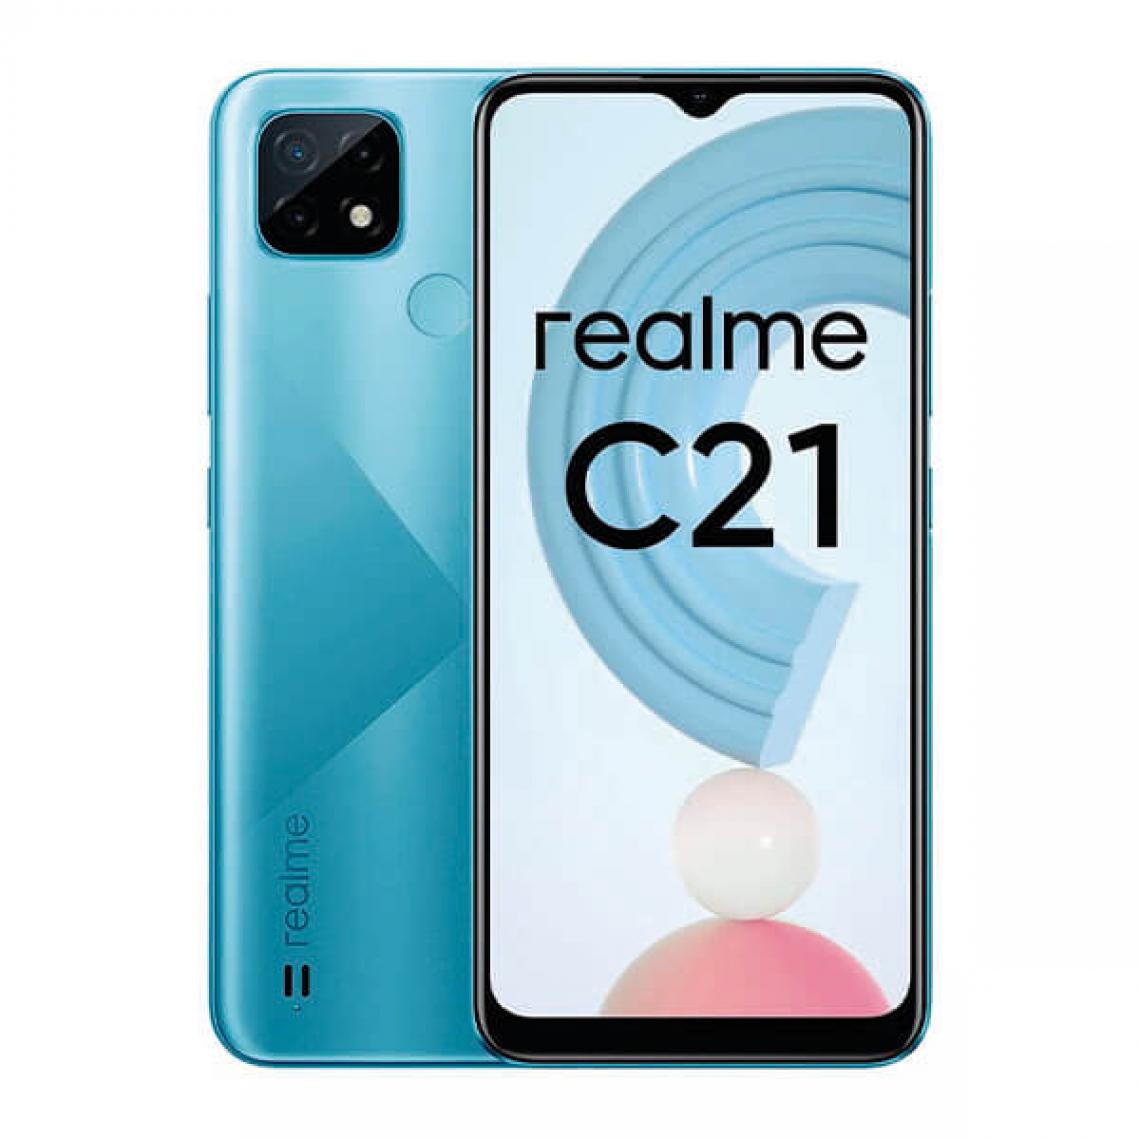 Realme - Realme C21 3Go/32Go Dual SIM Bleu (Cross Blue) - Smartphone Android